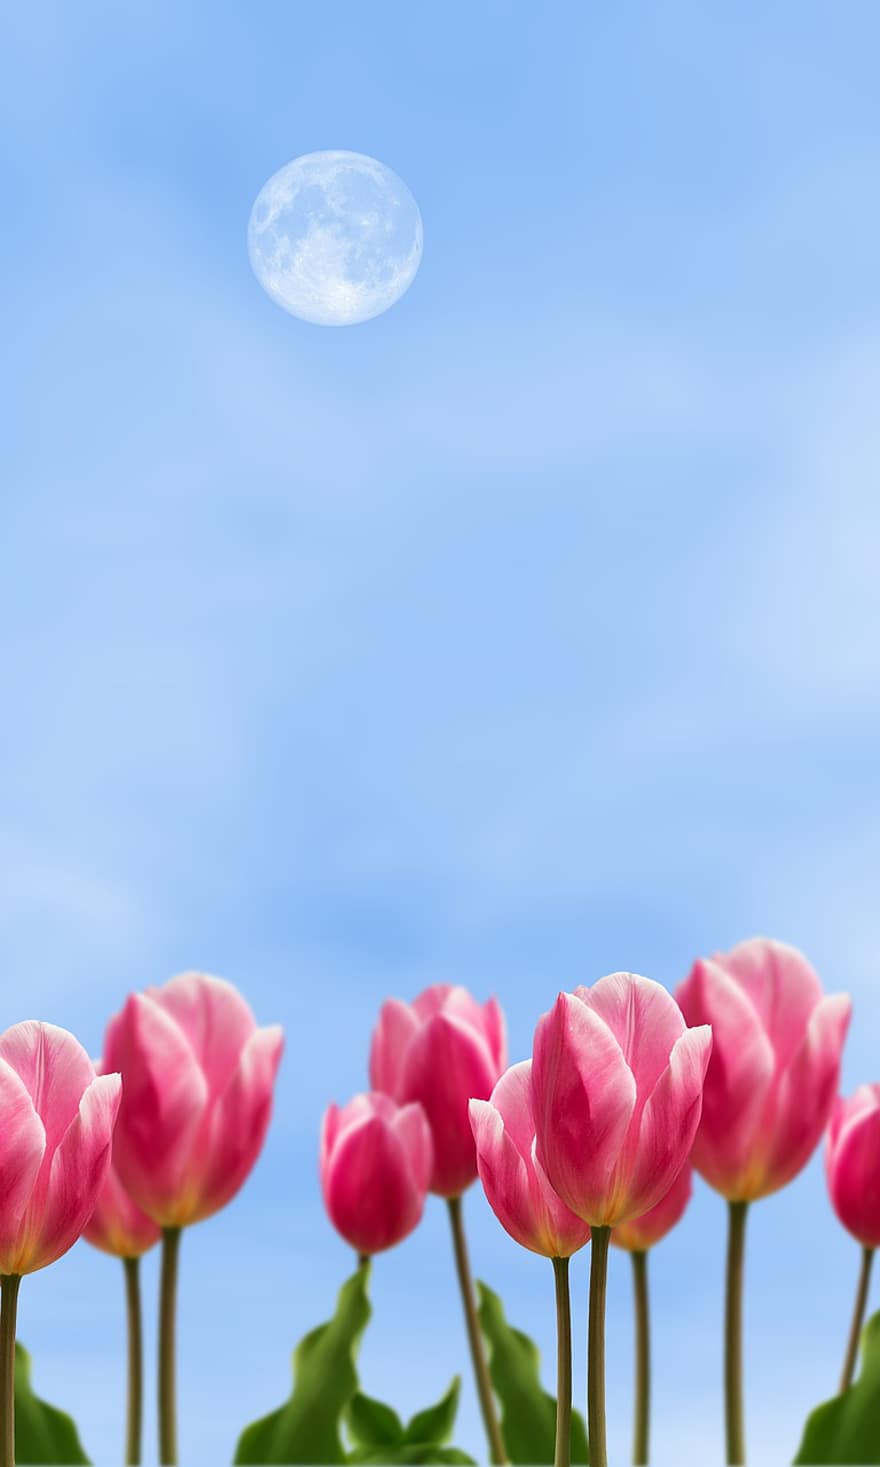 tulip merah muda, bunga-bunga merah muda, alam, pemandangan, tulip, bunga-bunga, bunga, musim panas, menanam, bunga tulp, biru